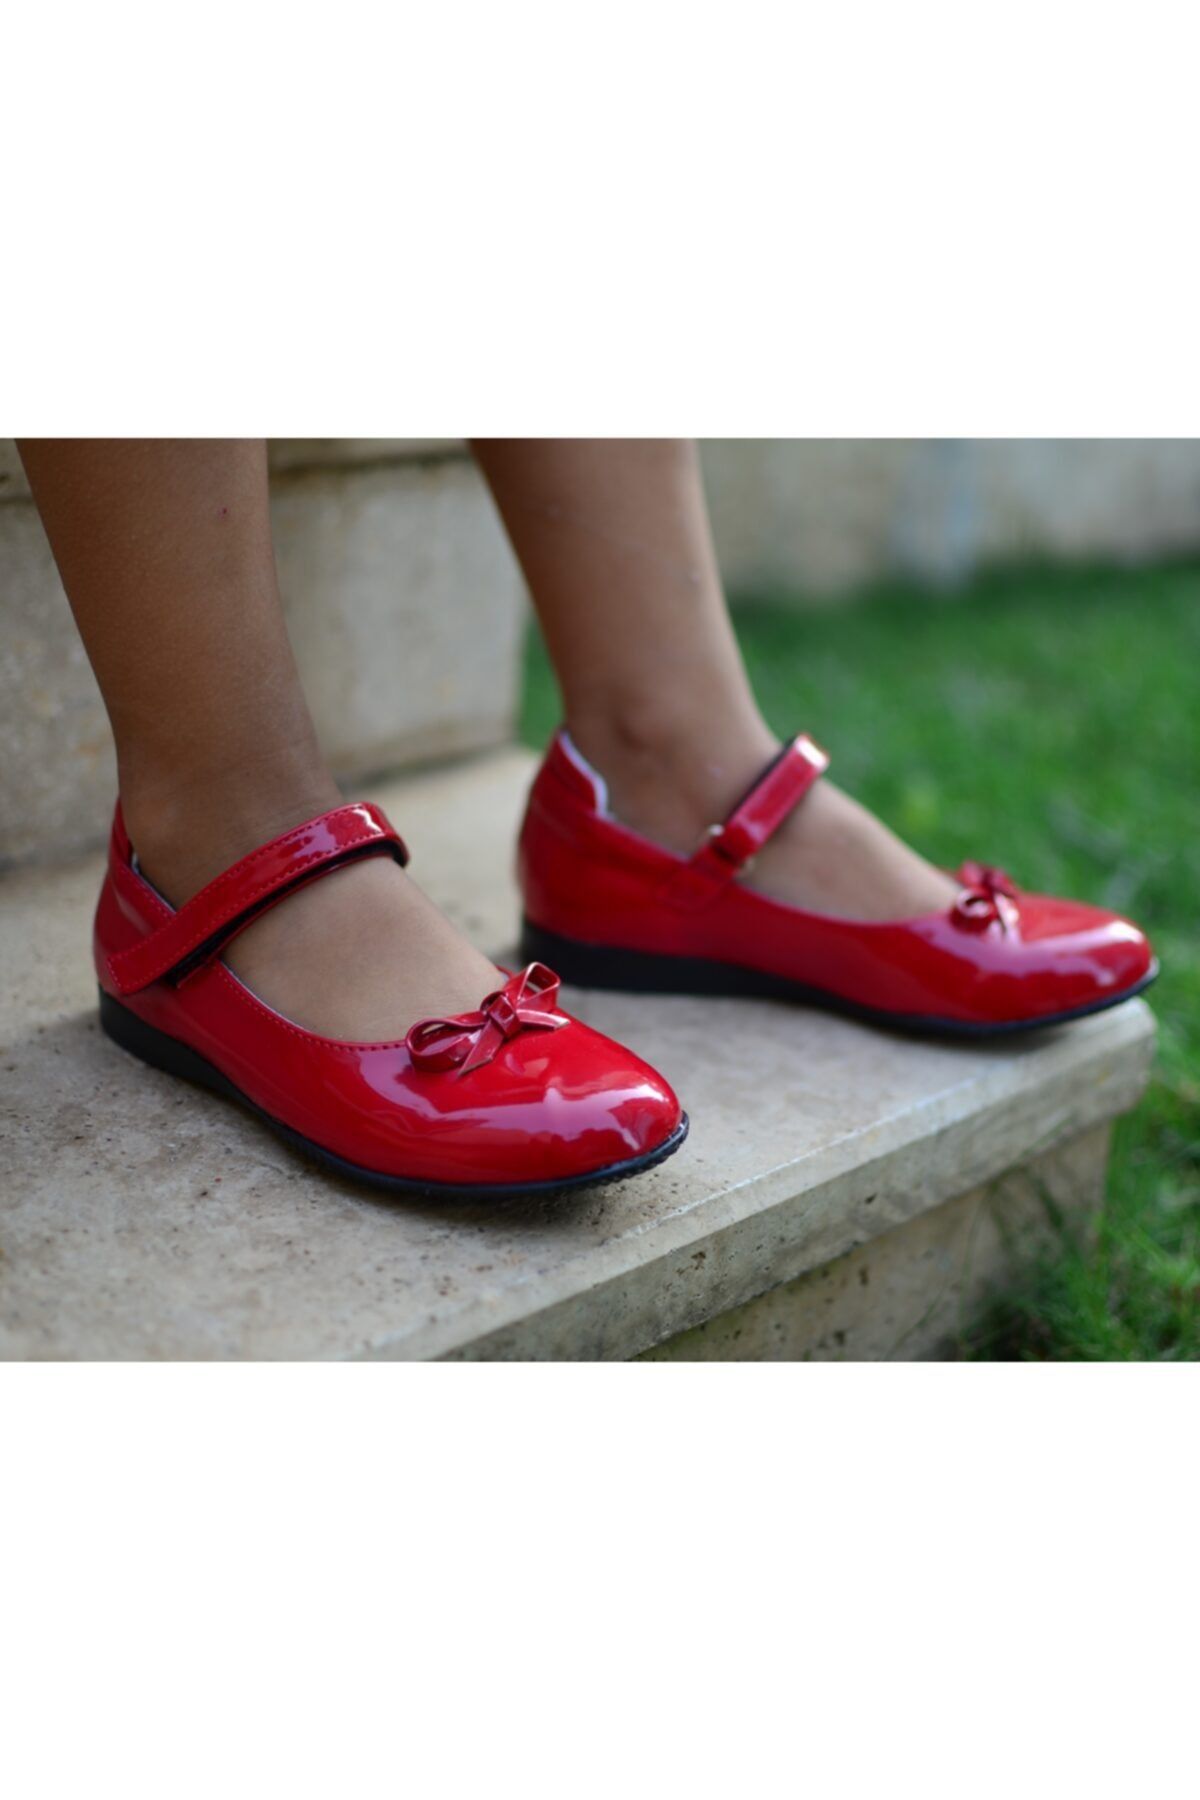 ÖZPINARCI Kız Çocuk Kırmızı Rugan Babet Ayakkabı